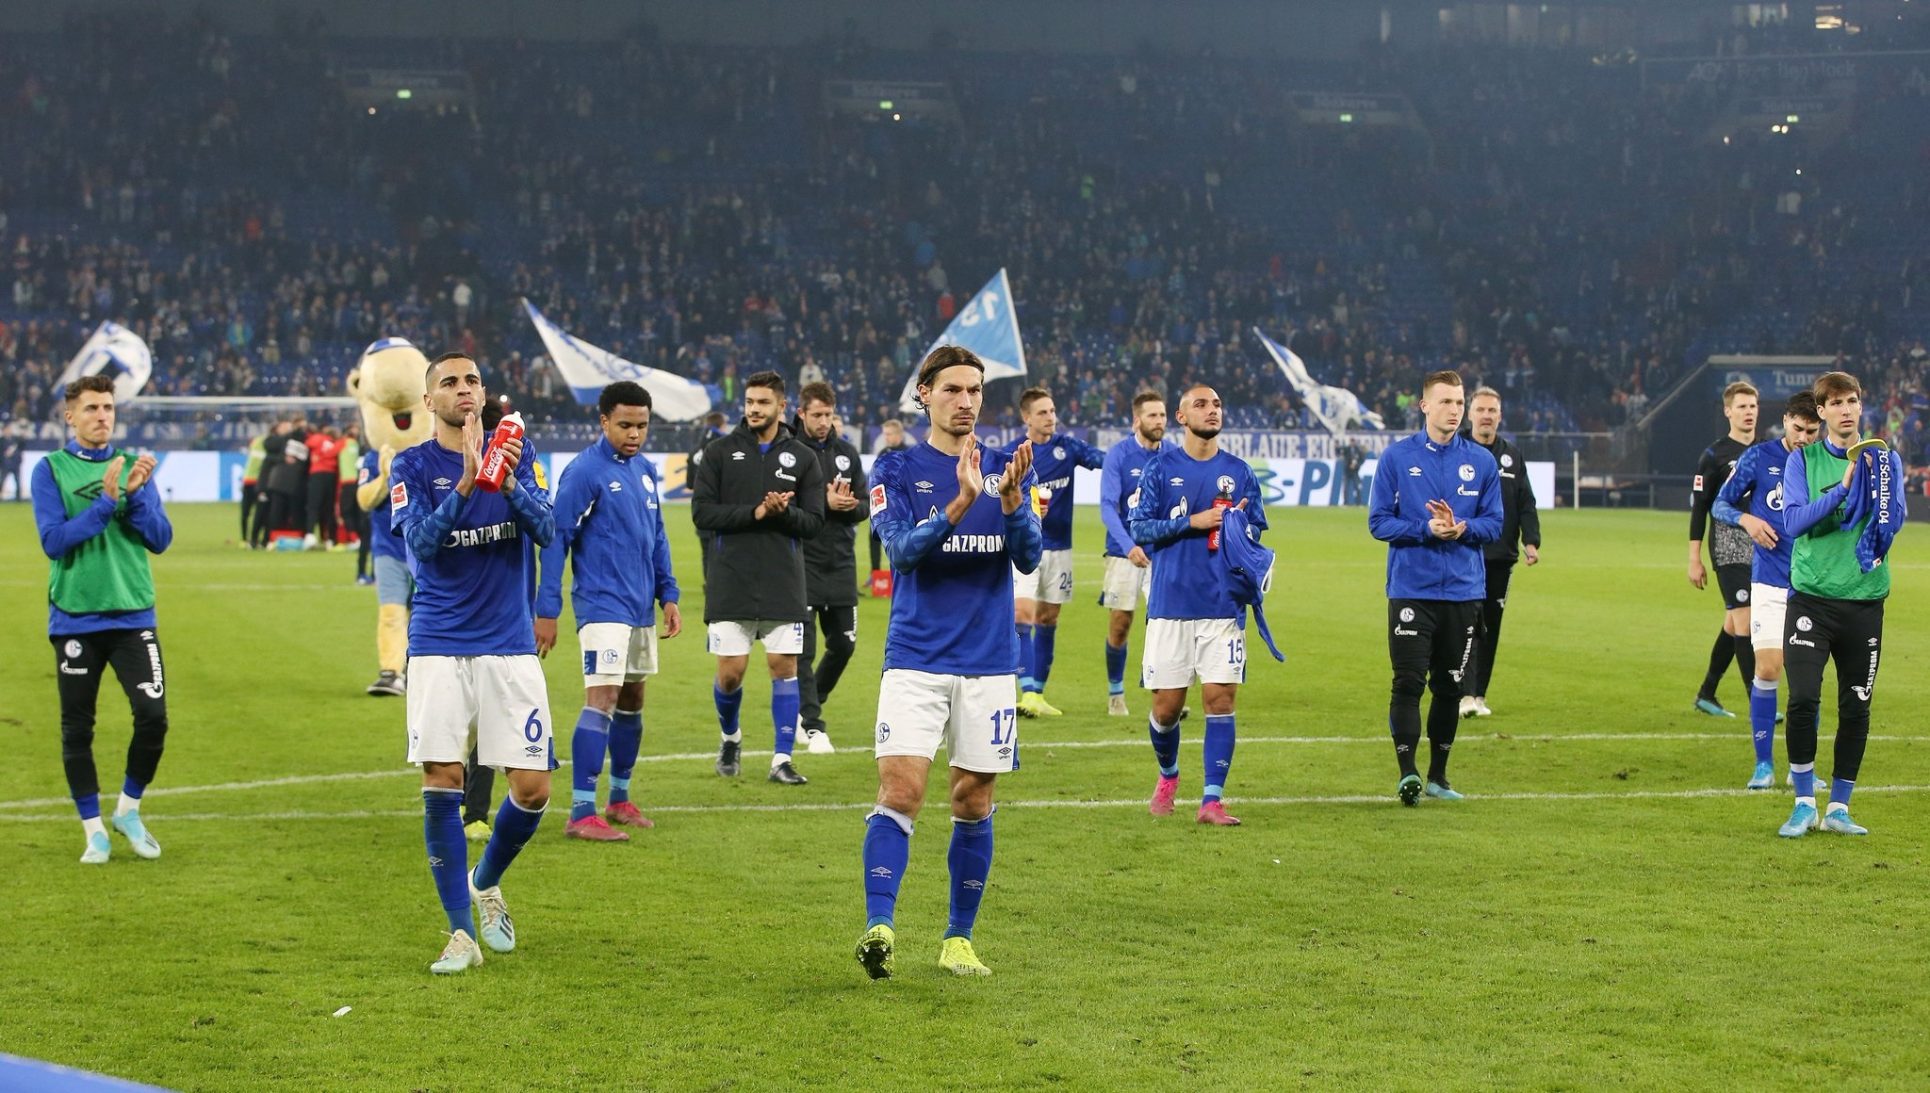 Los jugadores del Schalke 04 de Alemania renuncian a parte de su salario